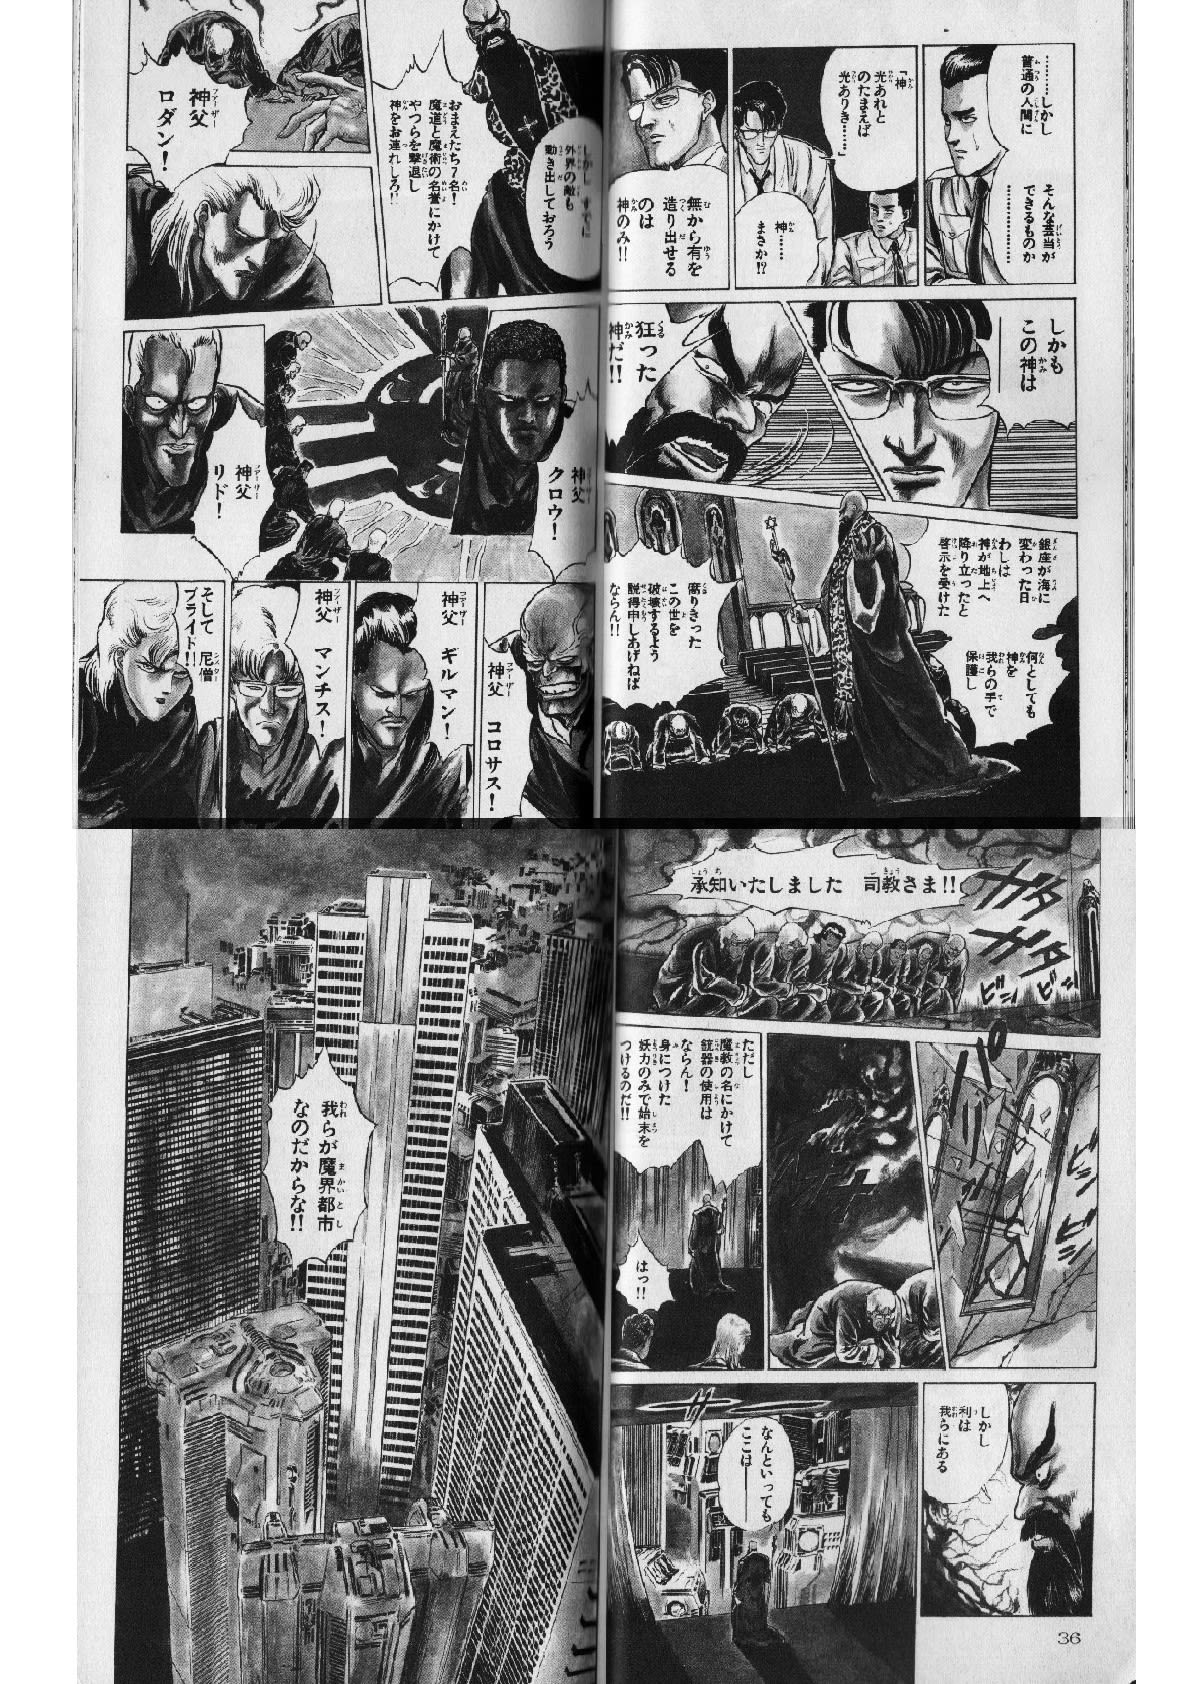 魔界都市ハンター 闇教団 が狂神を利用し世界滅亡のために動き出す 個人的に気に入った漫画だったり 書籍だったりを気まぐれで紹介するモトブログおじさん